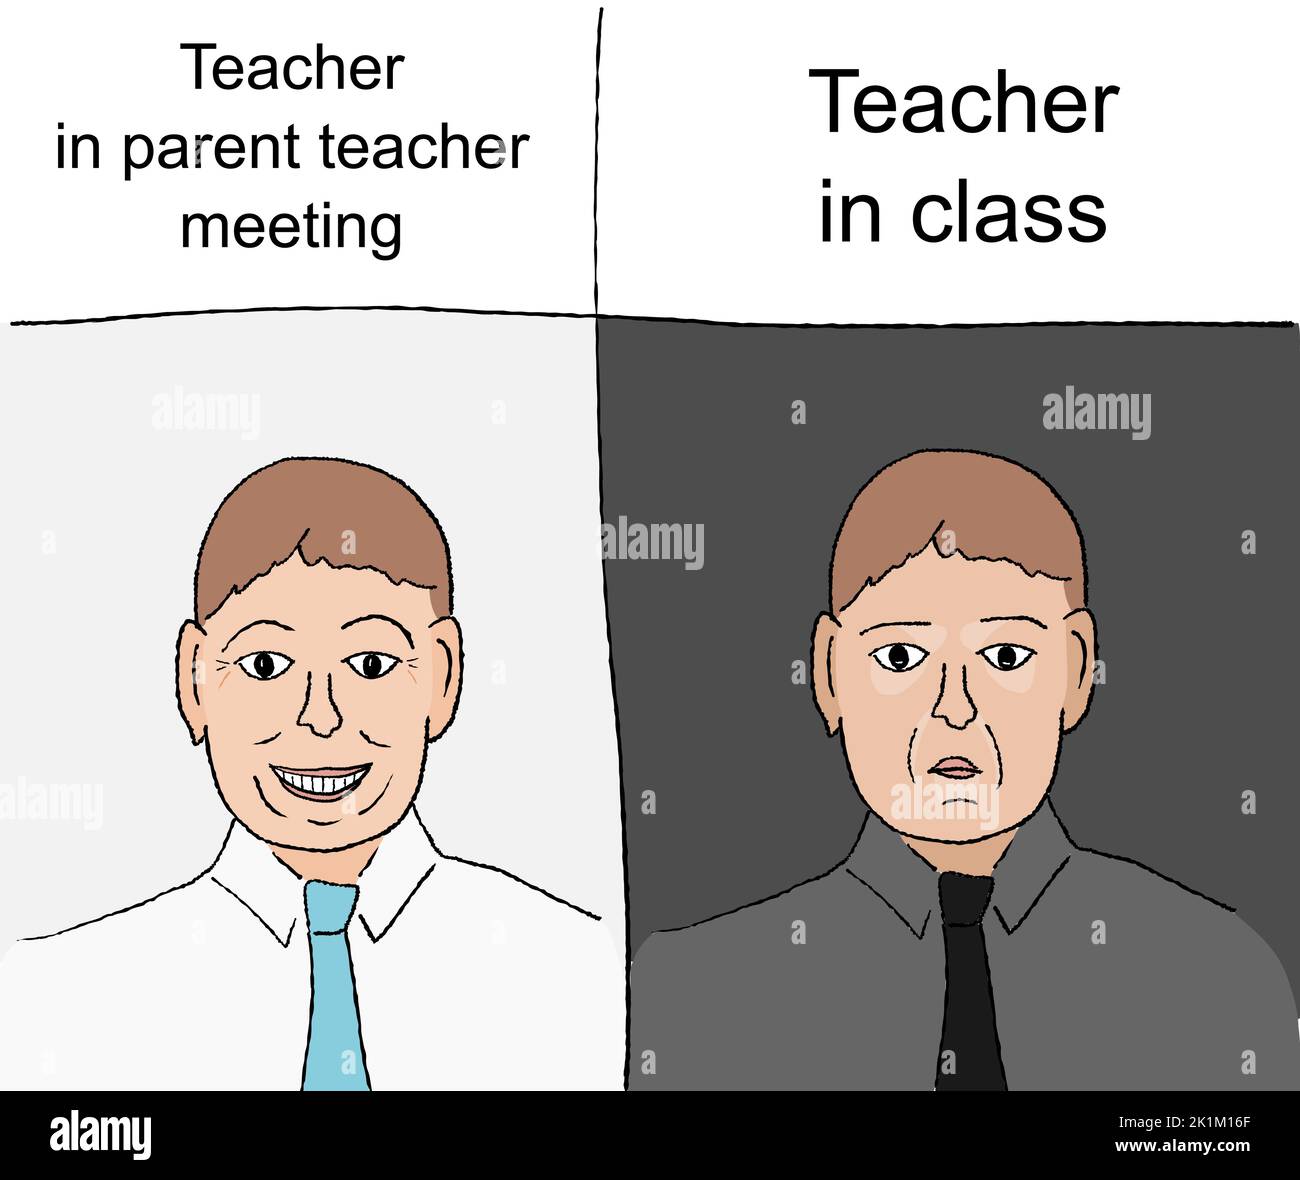 Teacher in class vs school teacher in parent meeting. Funny meme for social media sharing. Stock Vector